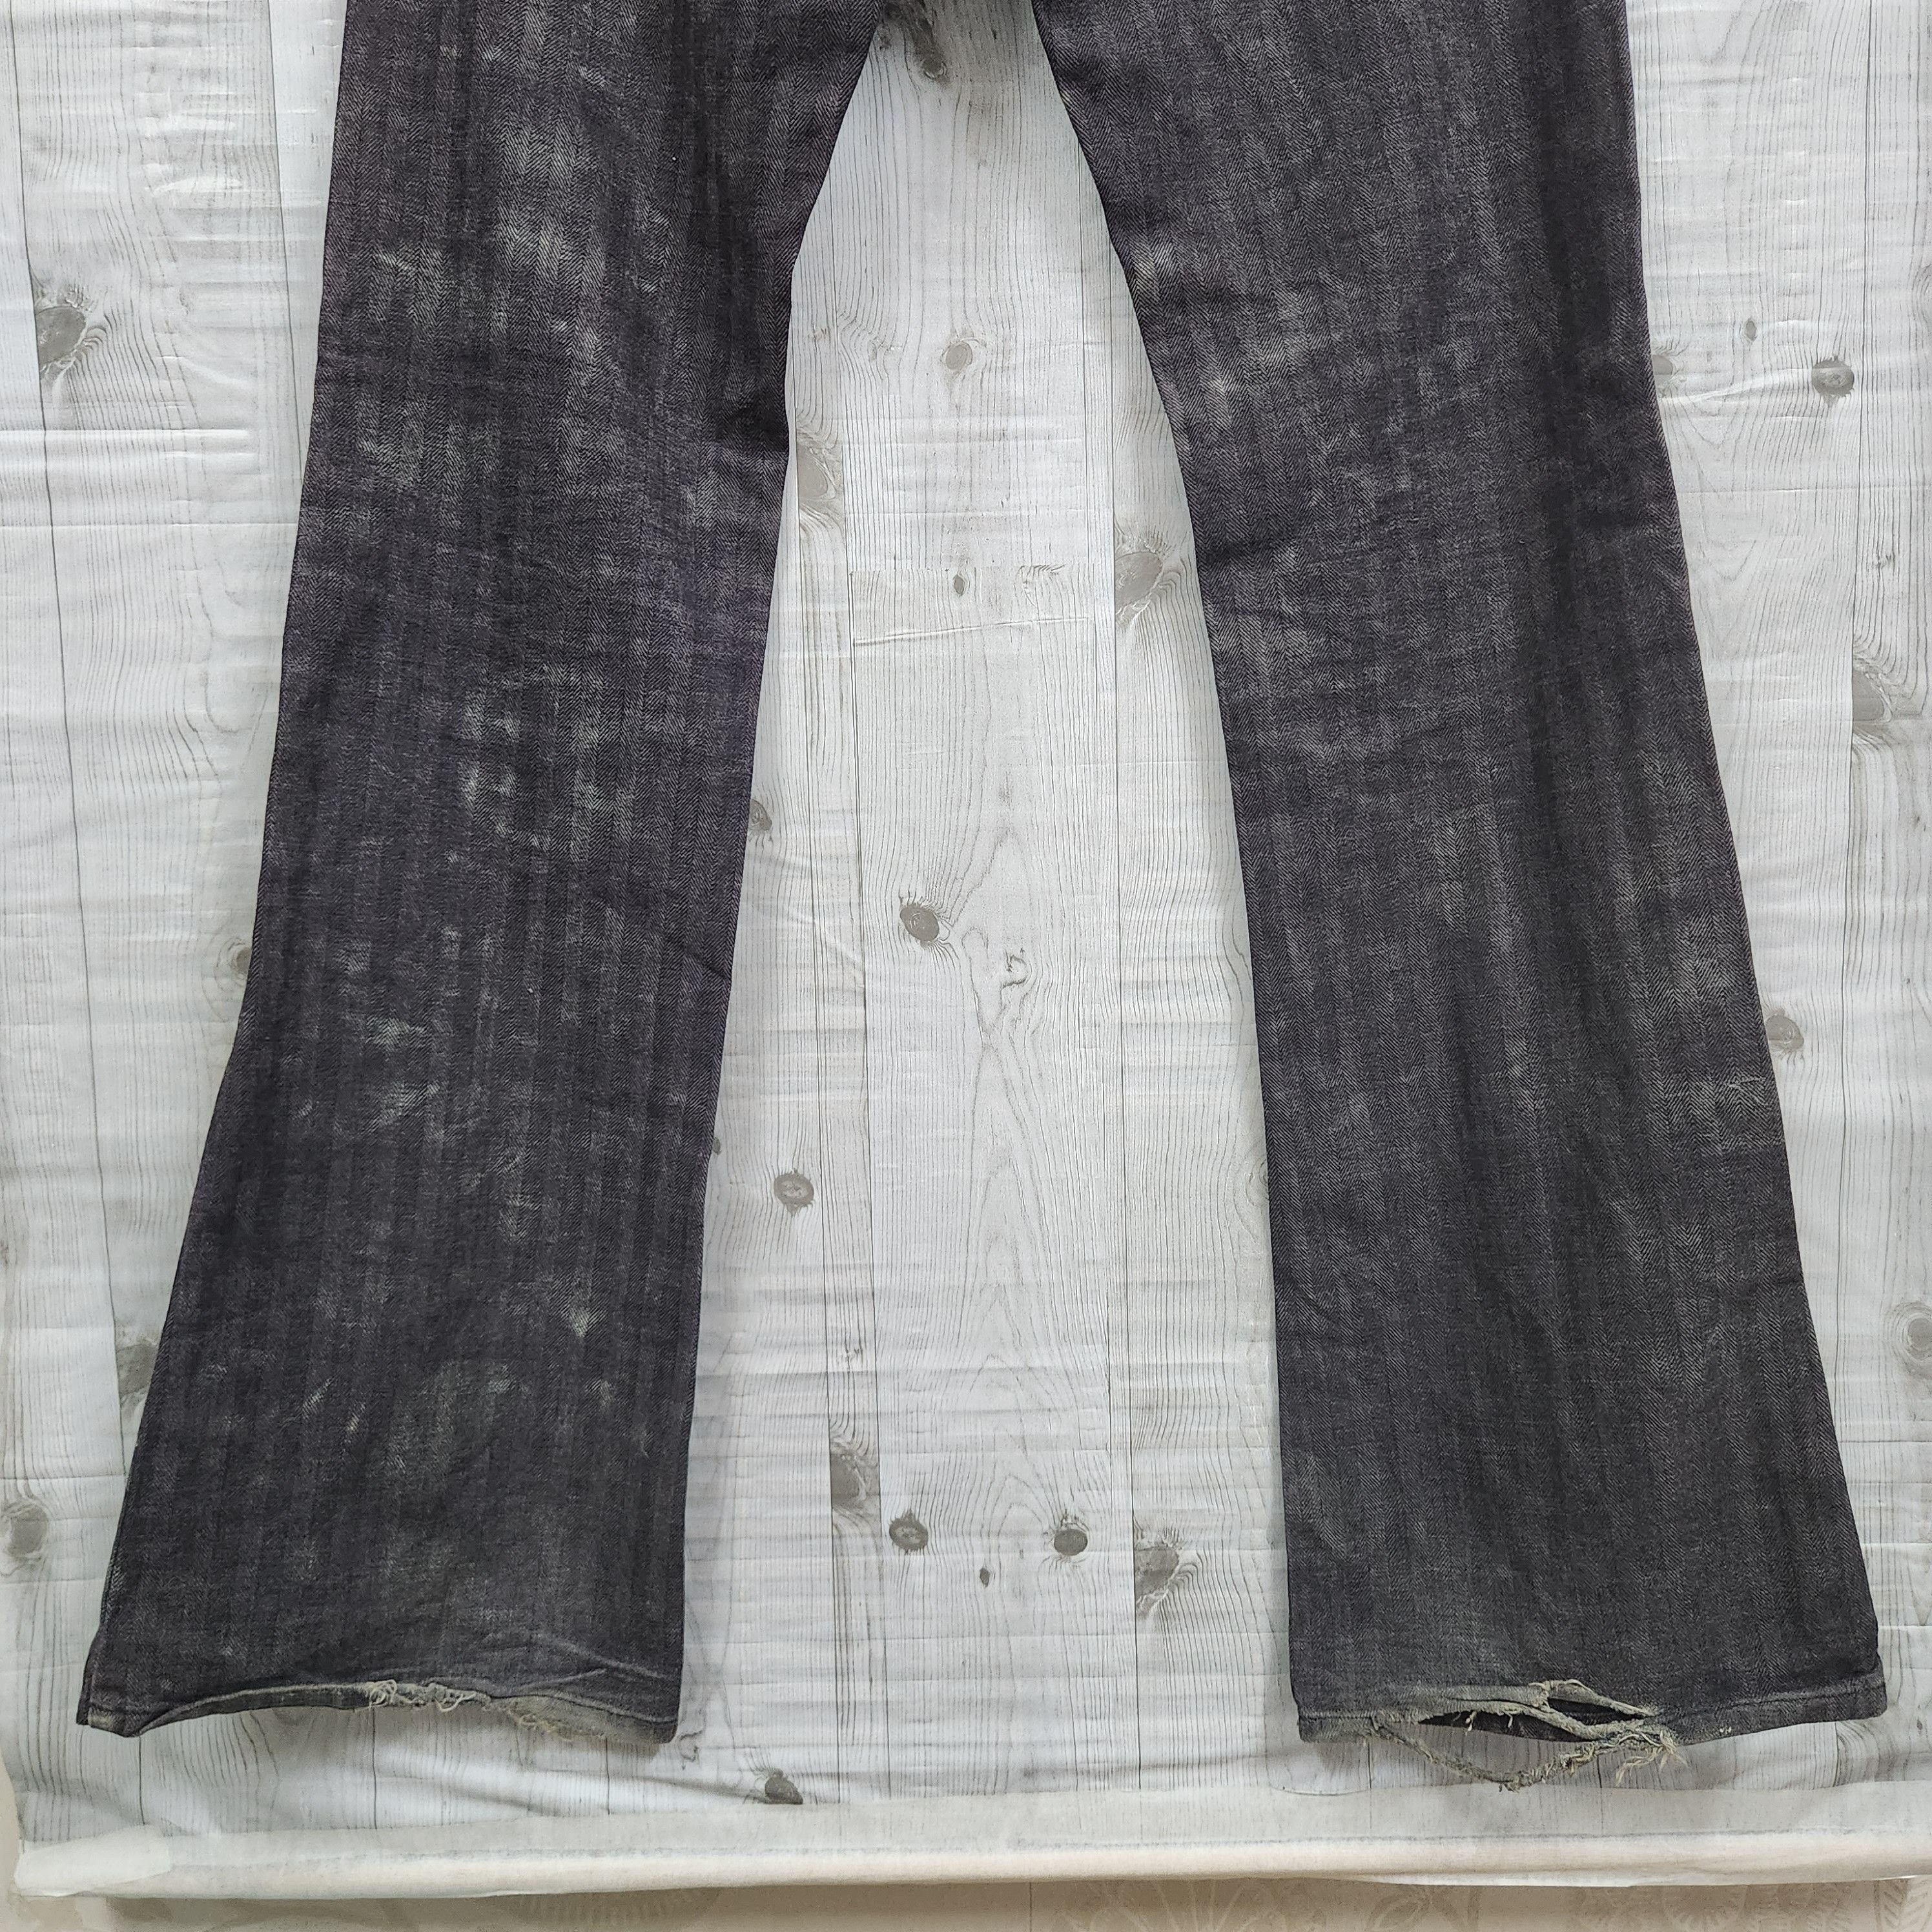 Japanese Brand - Flared Edge Rupert Denim Japan Jeans 70s Style - 11